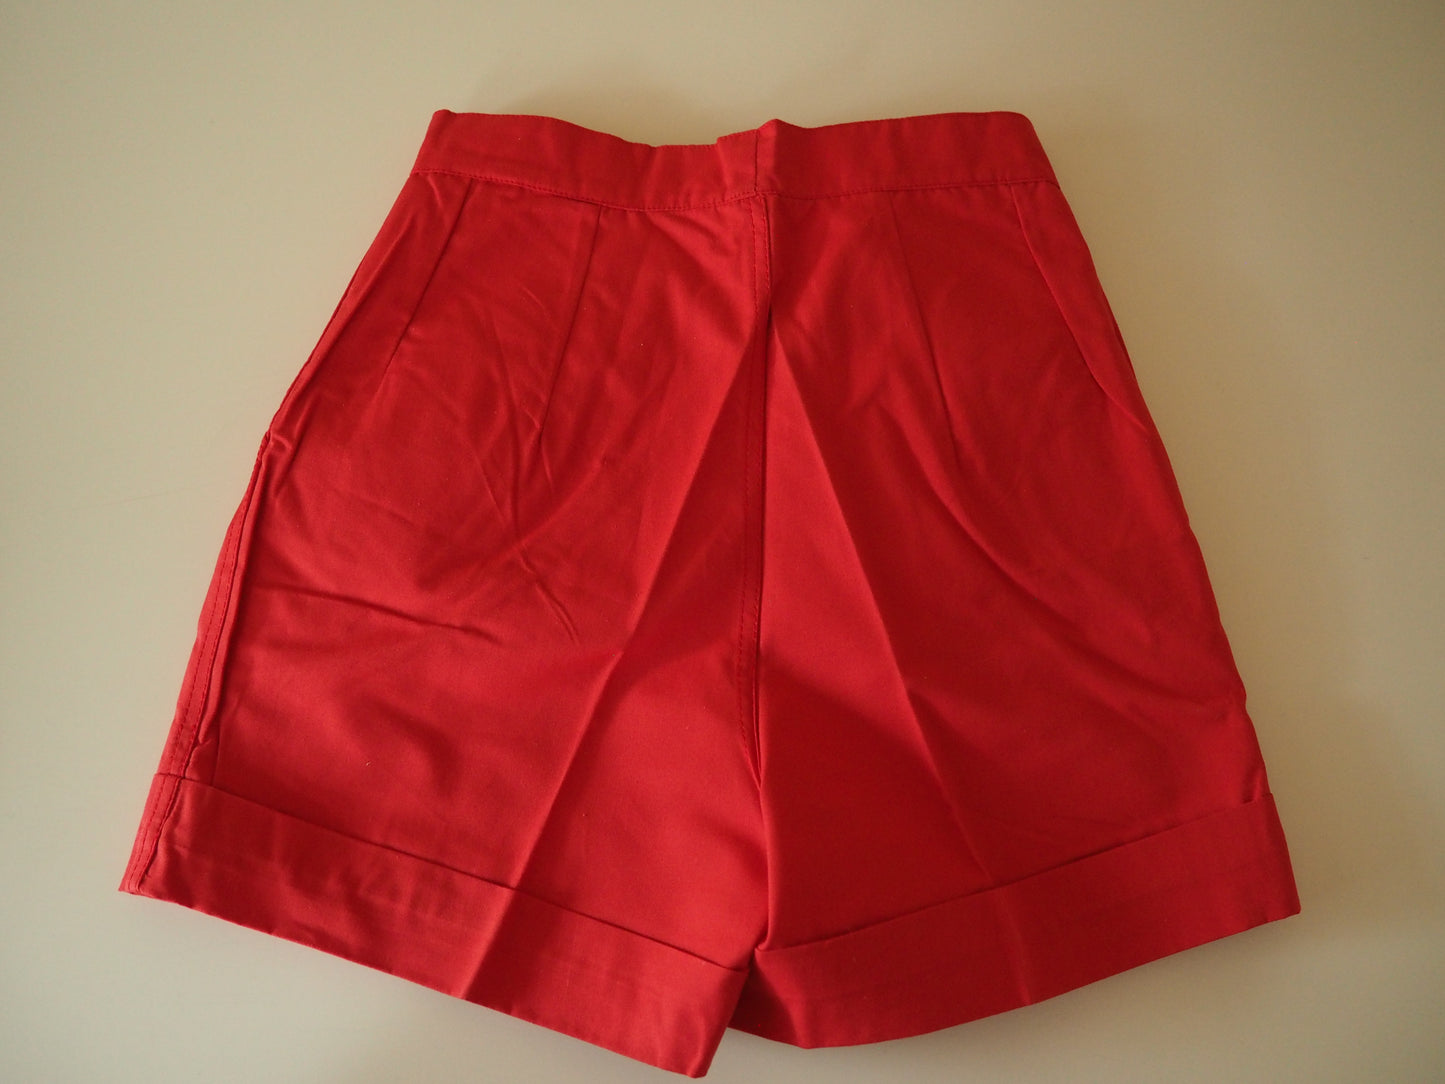 Lasten punaiset Tiklaksen Rita shortsit, käyttämätöntä vanhaa varastoa